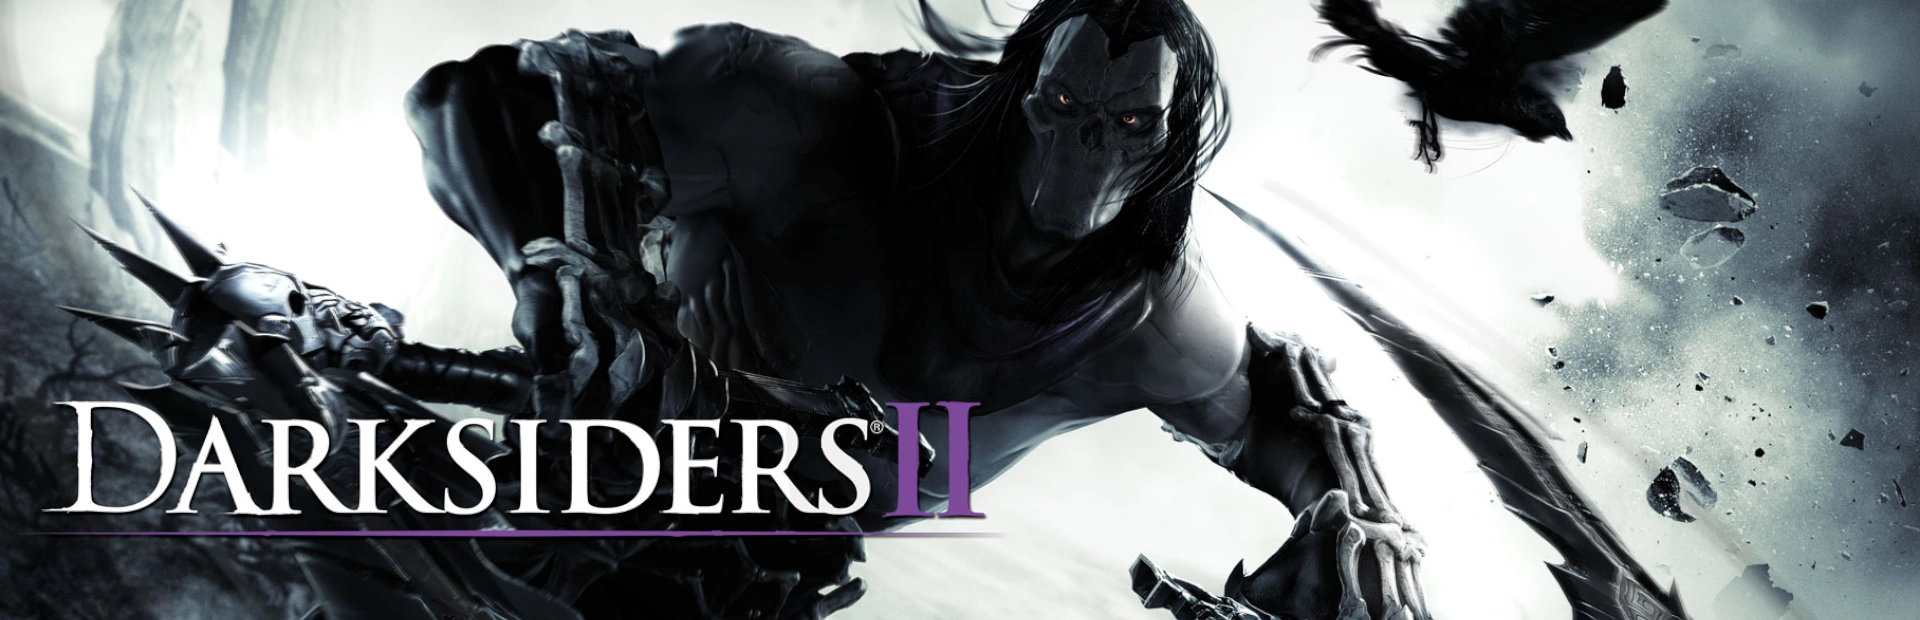 دانلود بازی Darksiders II برای کامپیوتر | گیمباتو